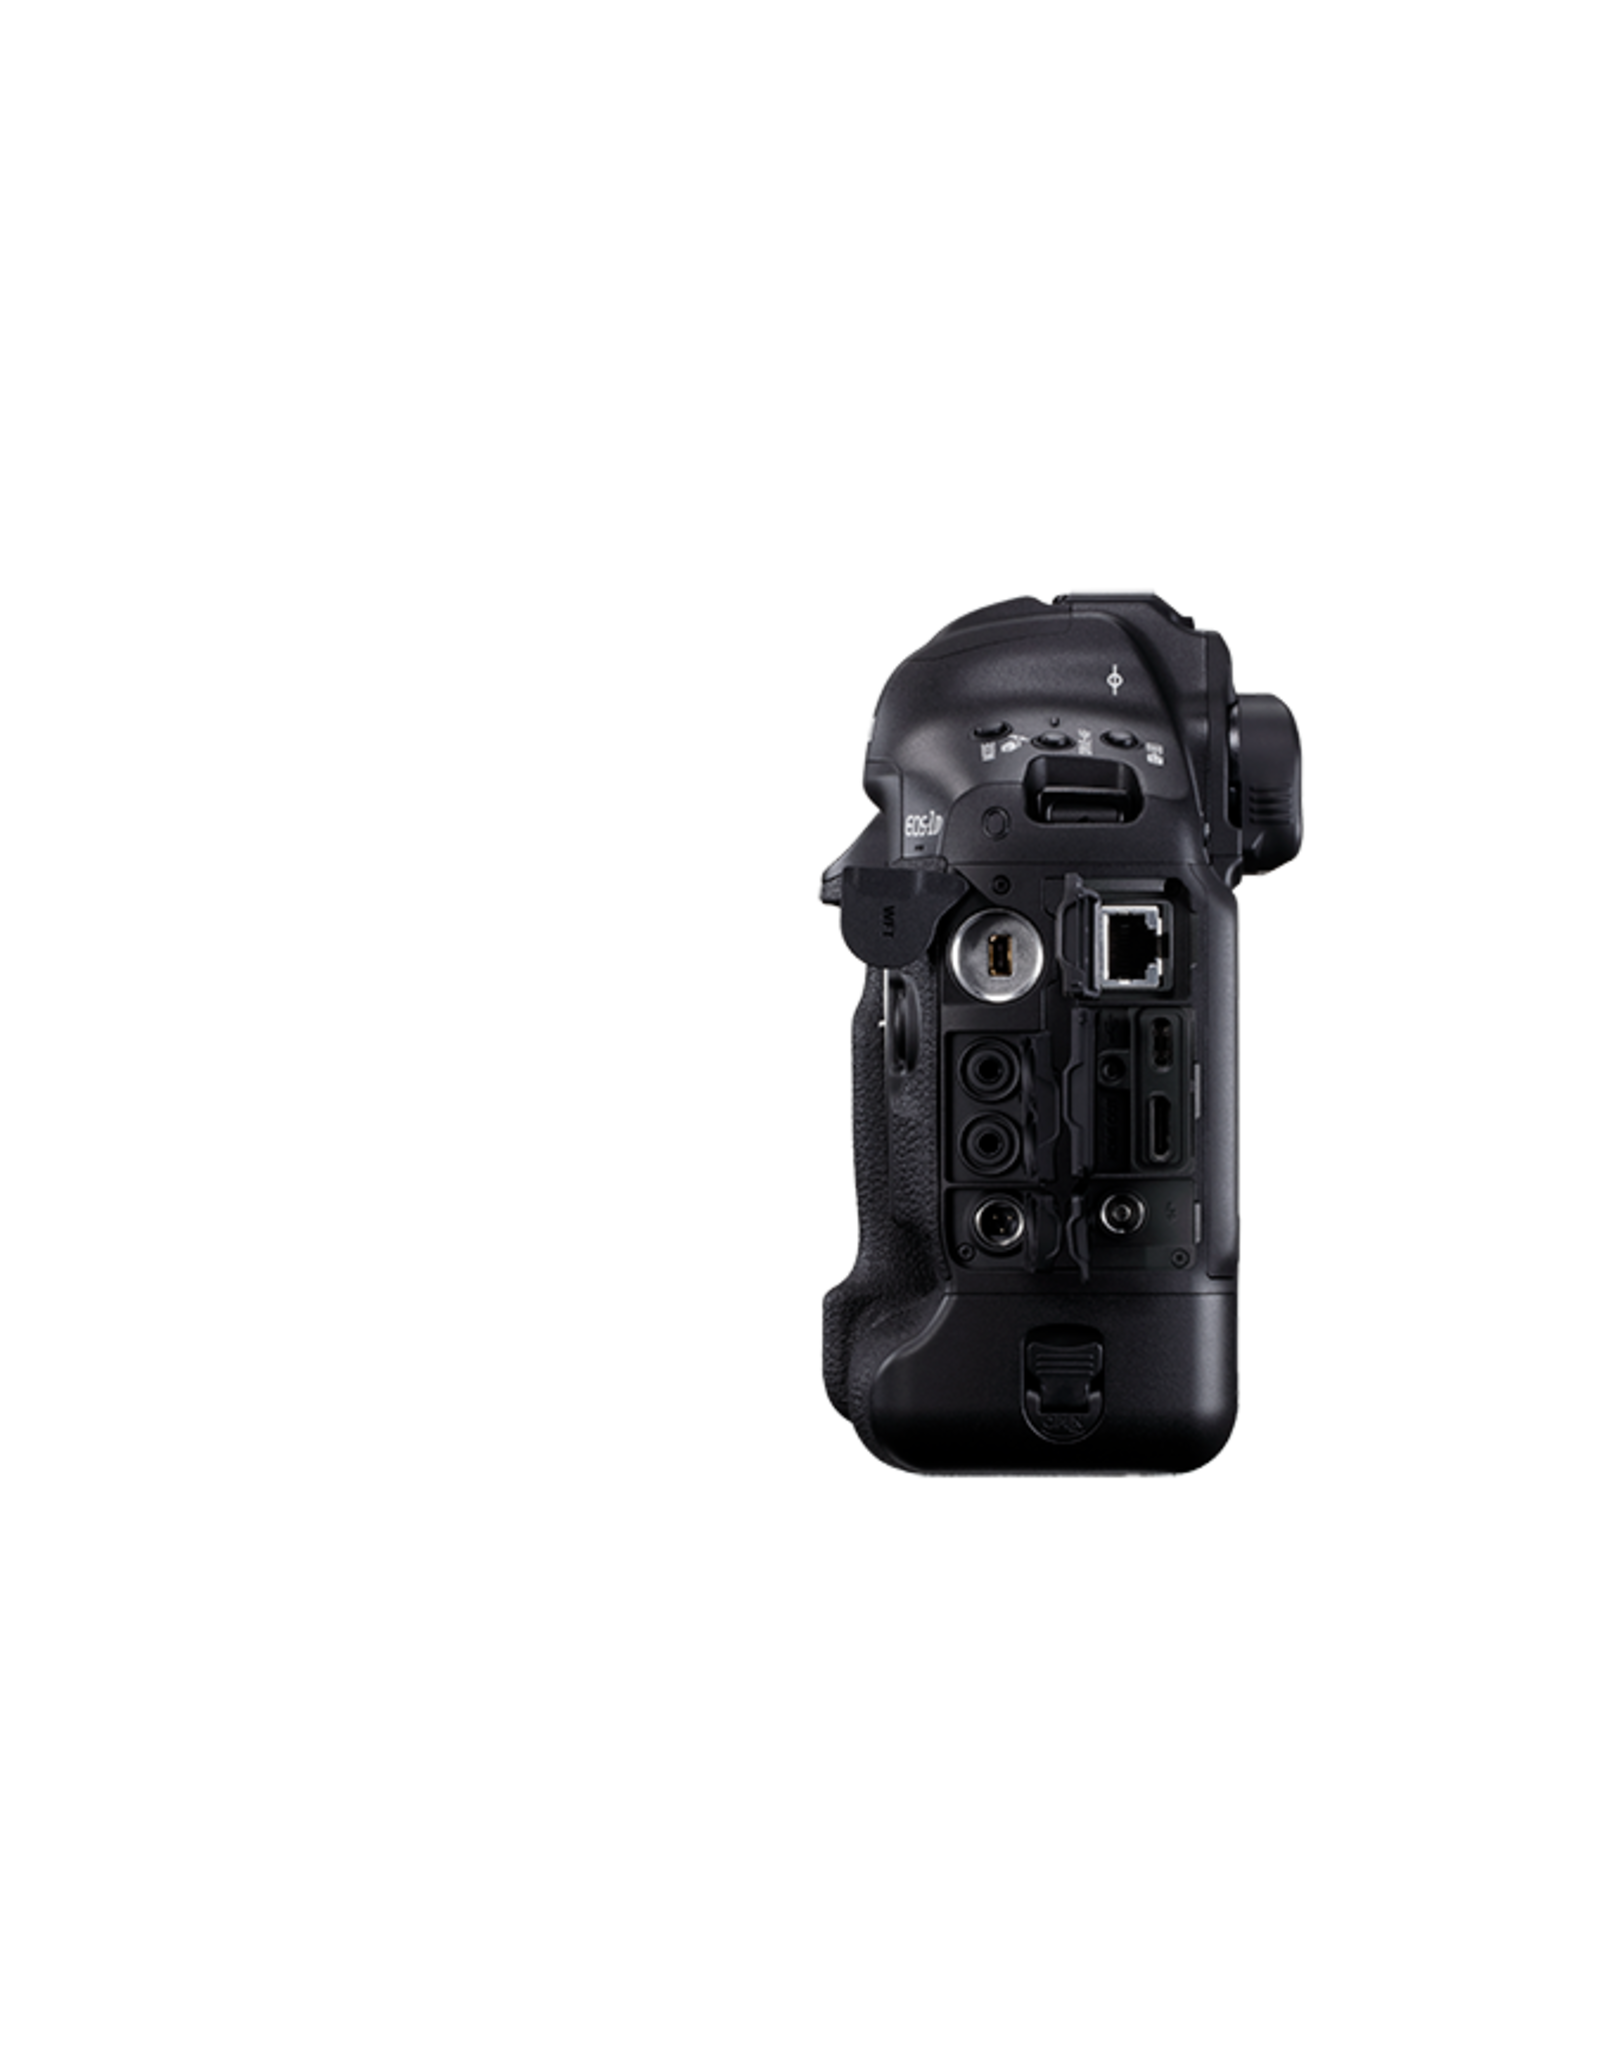 Canon Canon EOS-1DX Mark III Body (DISPLAY-OPEN BOX-FULL WARRANTY)